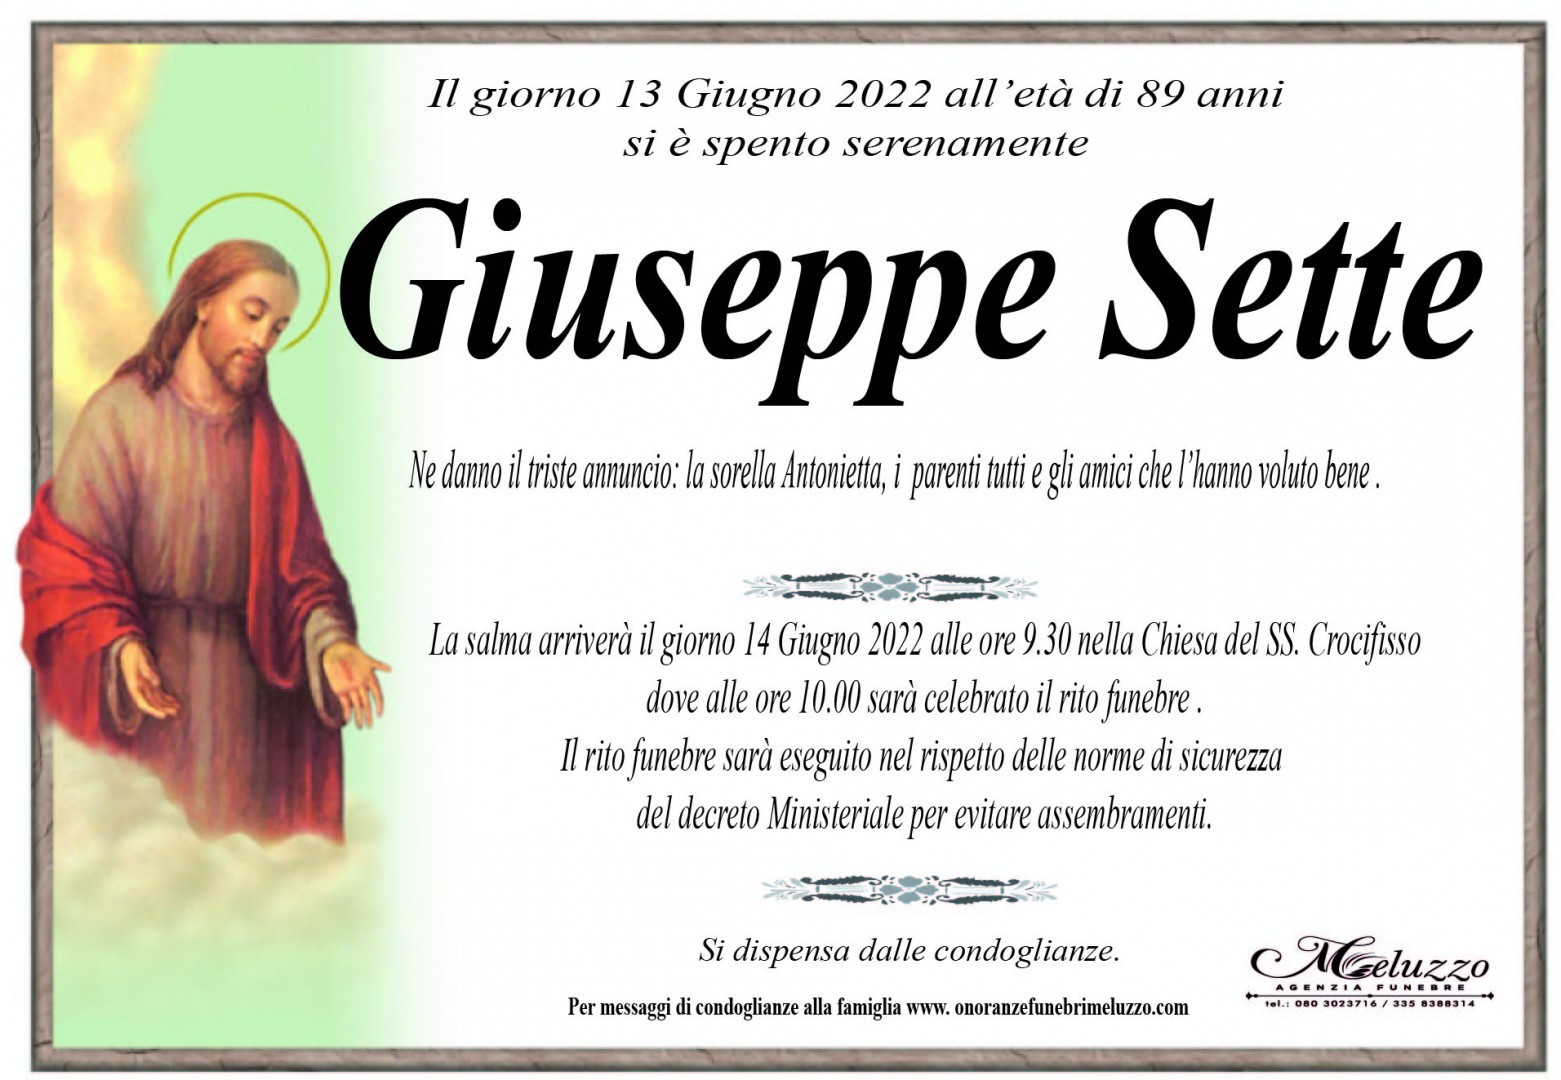 Giuseppe Sette